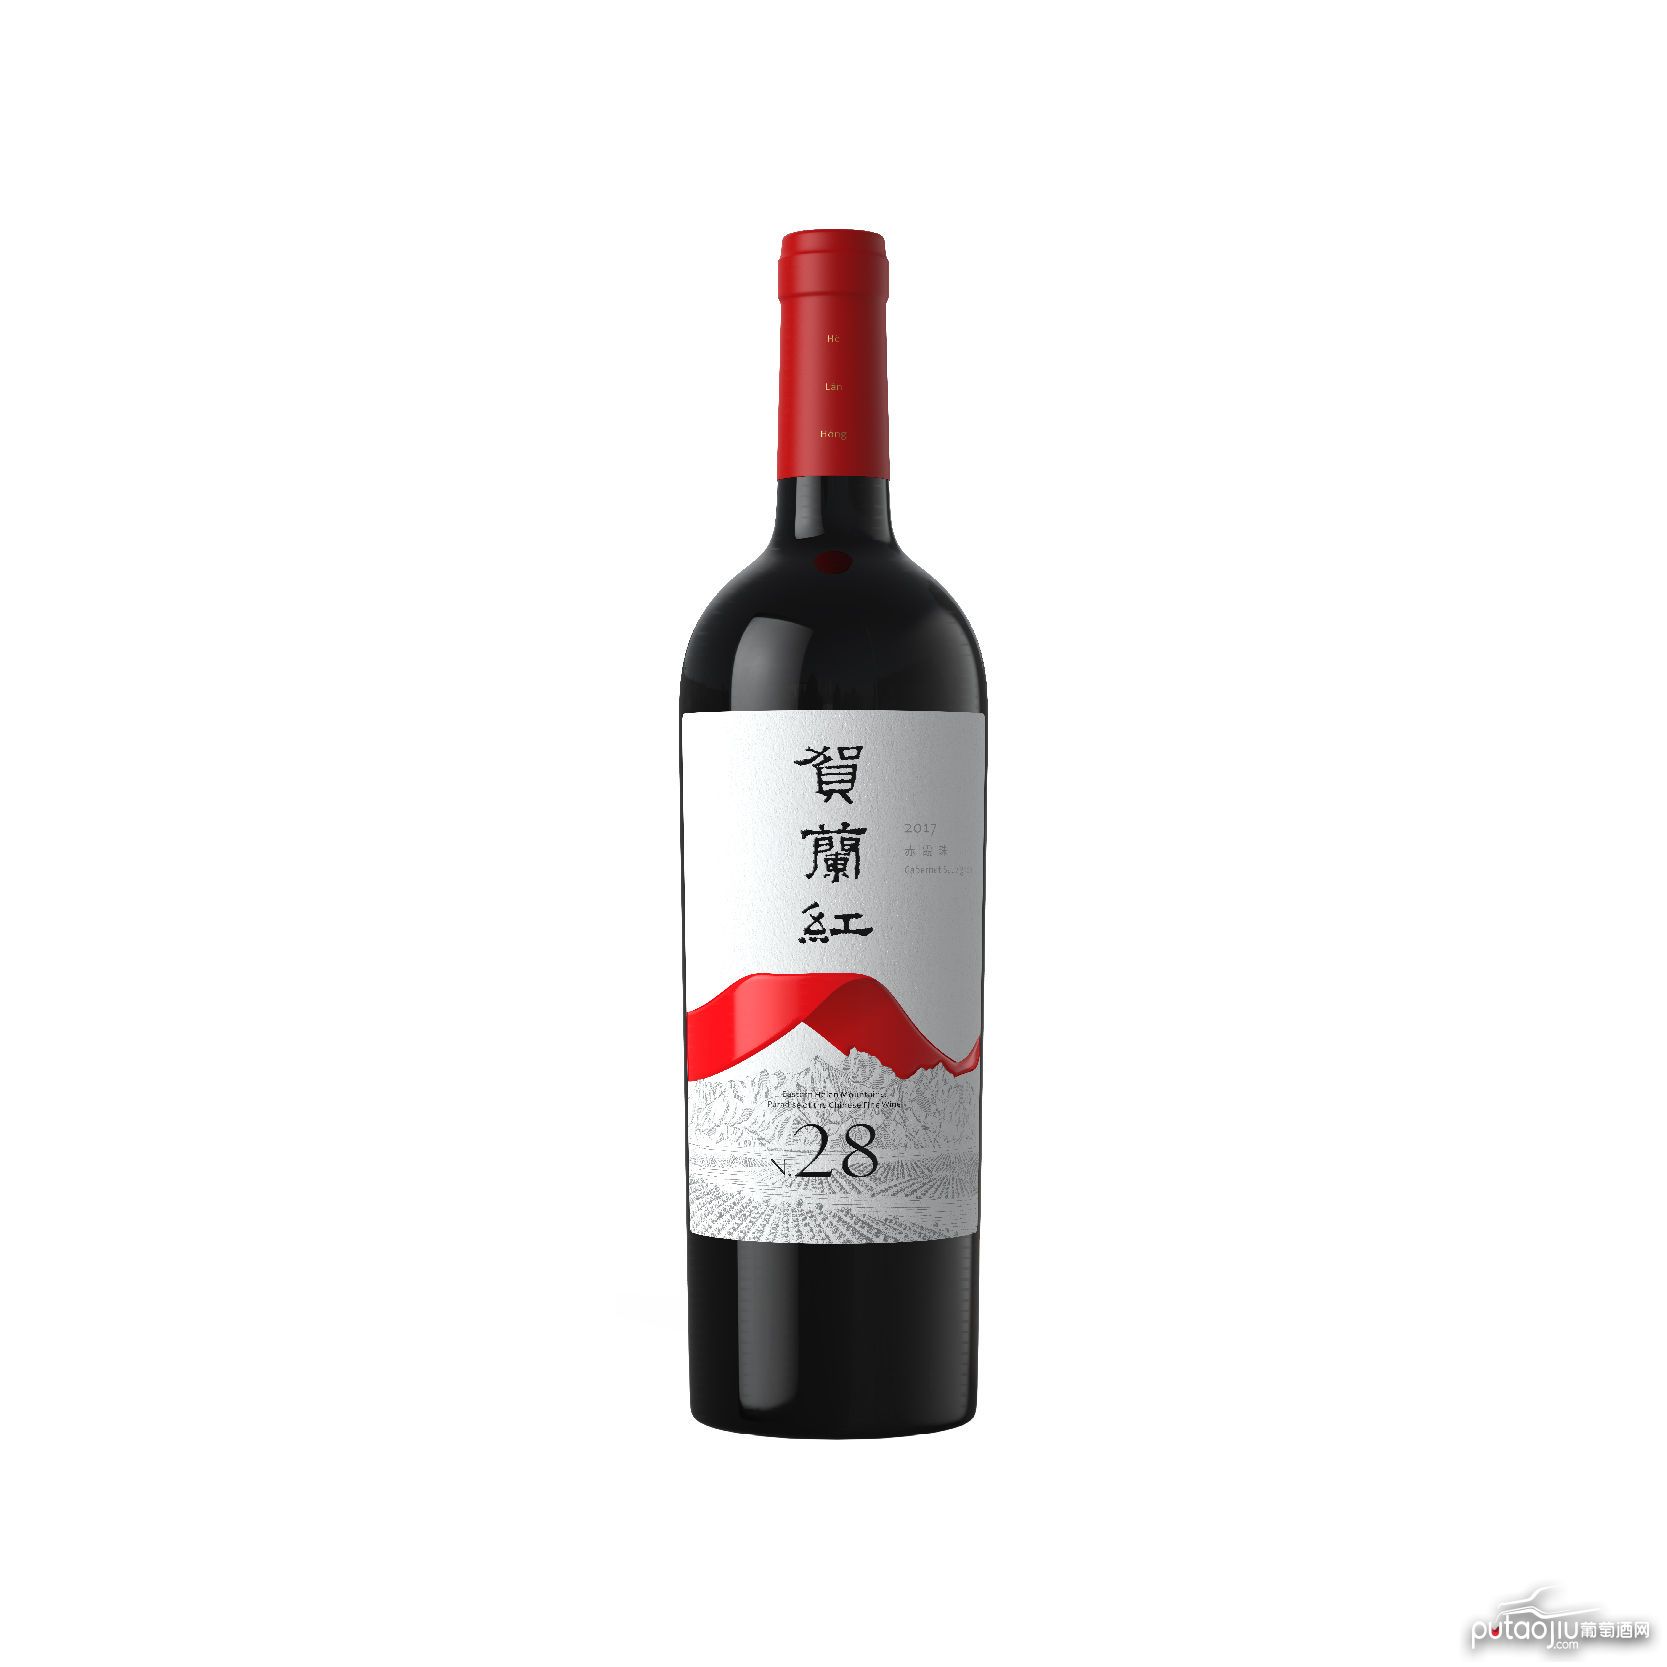 中国宁夏产区西鸽贺兰红N.28葡萄酒红酒